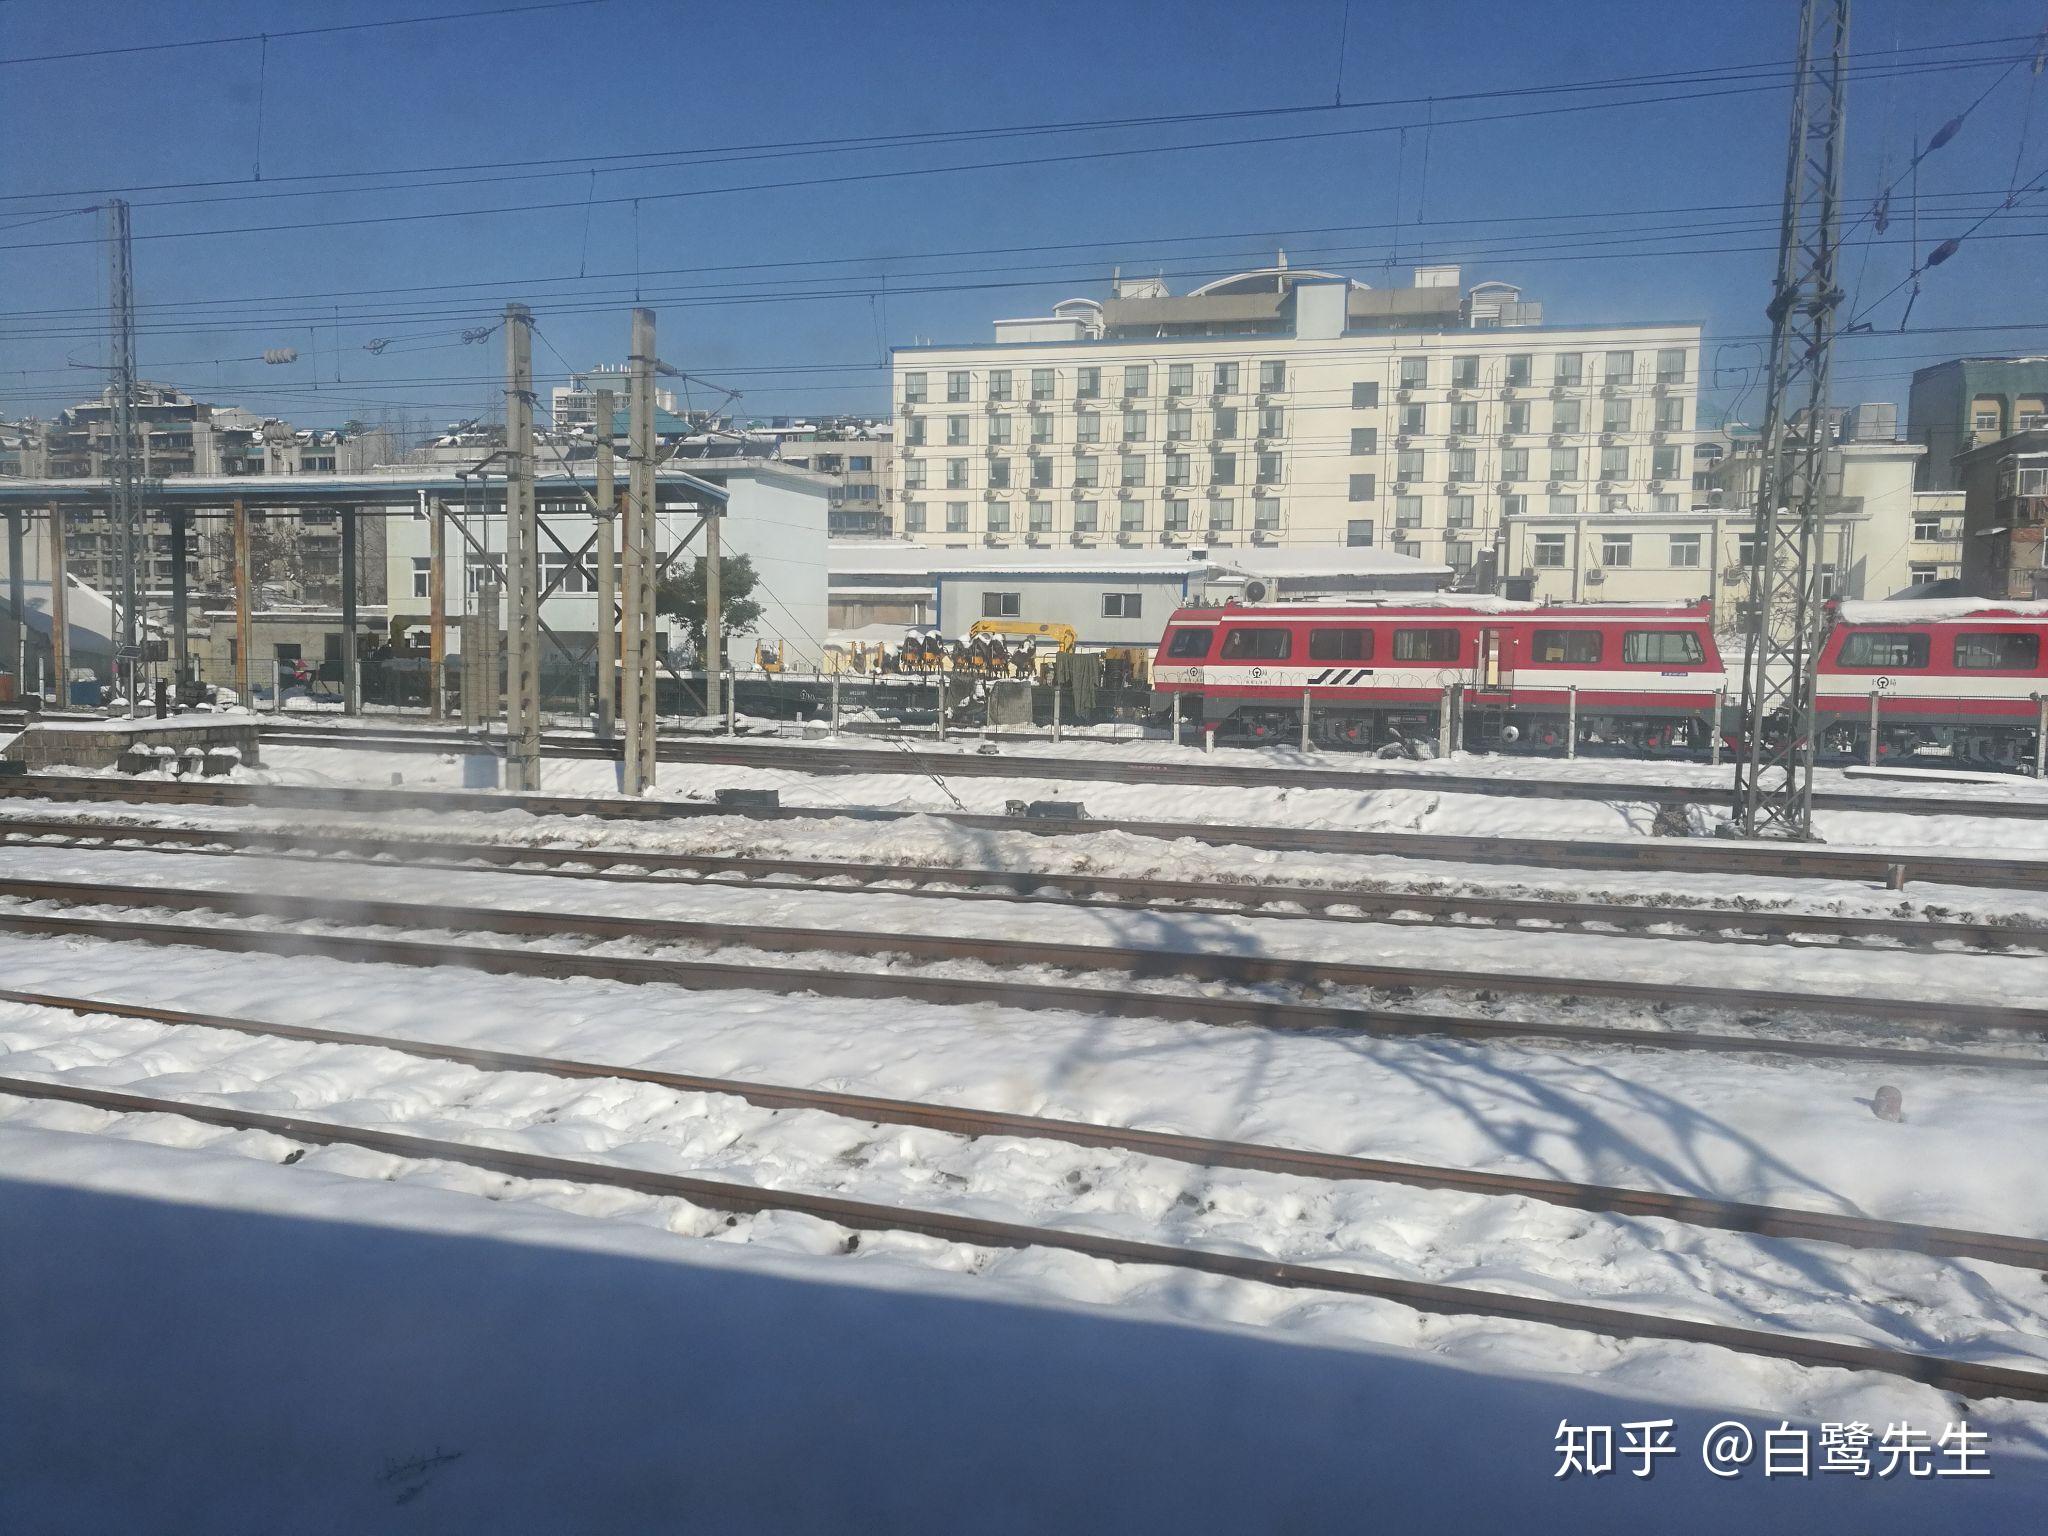 2018 年你坐了哪些火车三月:乘坐t64次,和同学一起开启北京之旅,穷